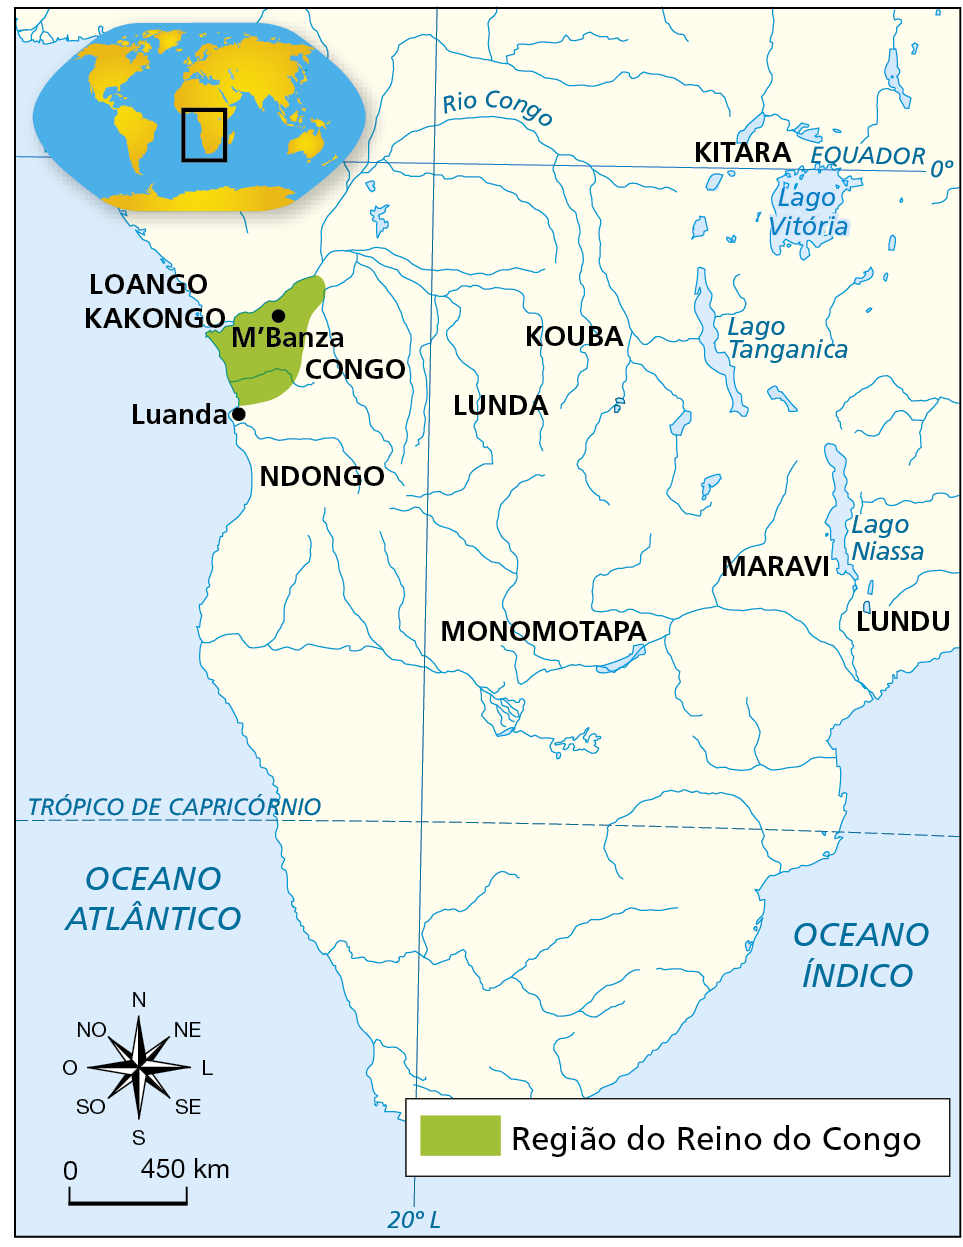 Mapa. A região do reino do Congo. Século 16. Mapa representando o sul e o centro do continente africano. Um território está destacado em verde. Há nomes de regiões e hidrografia sinalizada. Em verde, em destaque, a 'Região do Reino do Congo', na costa oeste da África, entre o sul da foz do Rio Congo e a região ao norte do rio Kwanza, no território que hoje corresponde à Angola. Destaque para as cidades de M’Banza e Luanda. Ao sul do rio Kwanza, o Ndongo; ao norte do Congo, Loango Kakongo. Outros destaques: à leste do Reino do Congo, Kouba e Lunda; a noroeste do Lago Vitória, Kitara; a oeste do Lago Niassa, Maravi; ao sul do Lago Niassa, Lundu; e na região do Rio Zambeze, Monomotapa. No canto inferior esquerdo, rosa dos ventos e escala de 0 a 450 quilômetros.